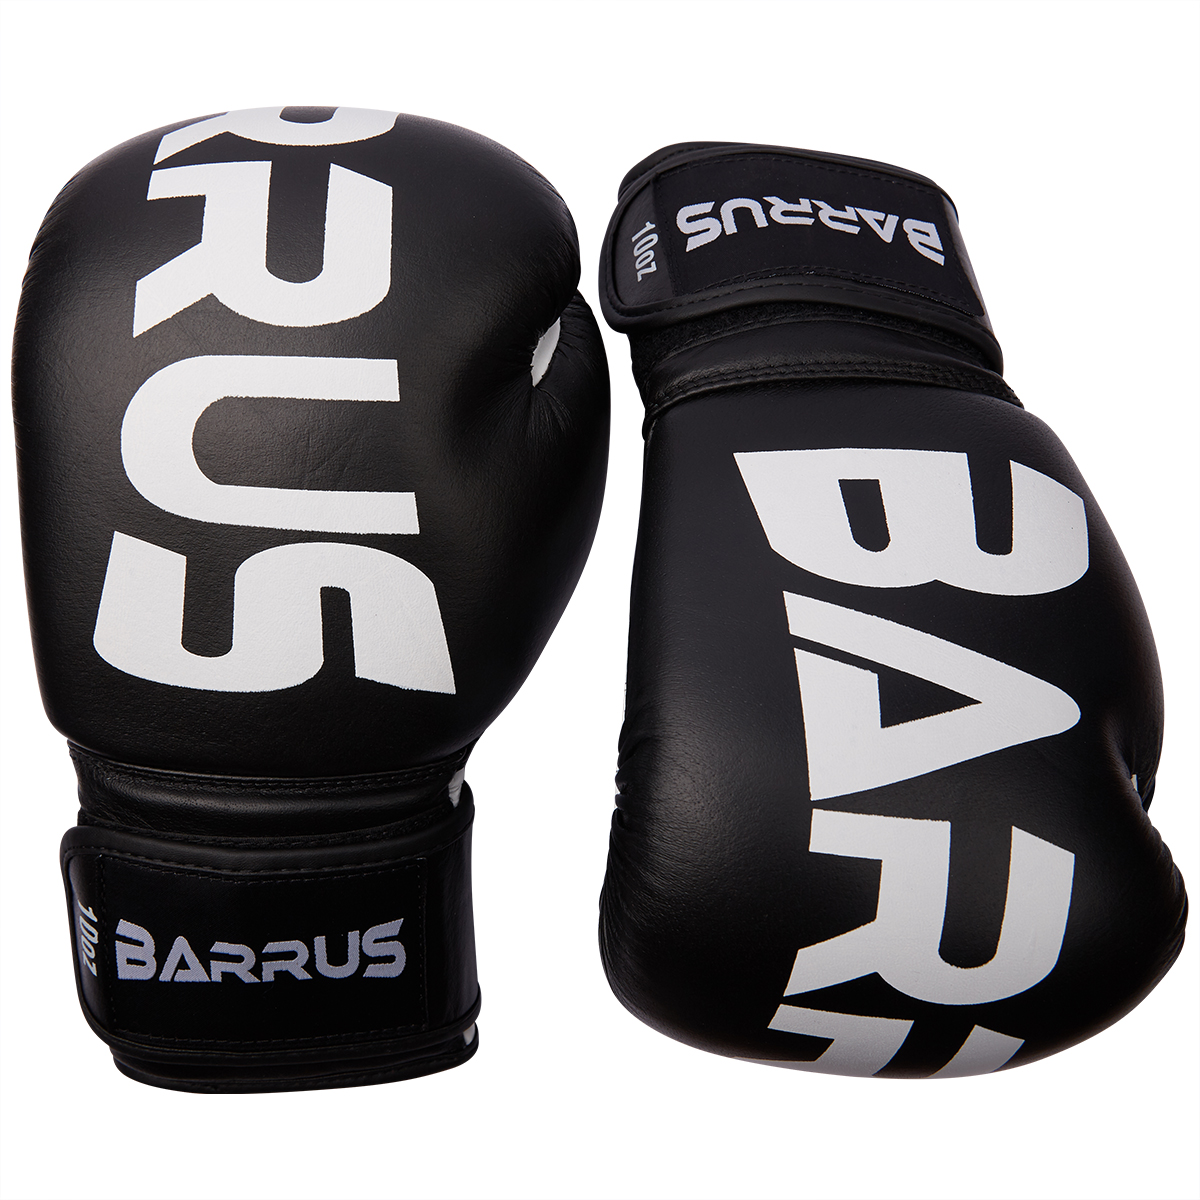 Barrus GUANTONI Full Boxe Kick Boxing MMA 